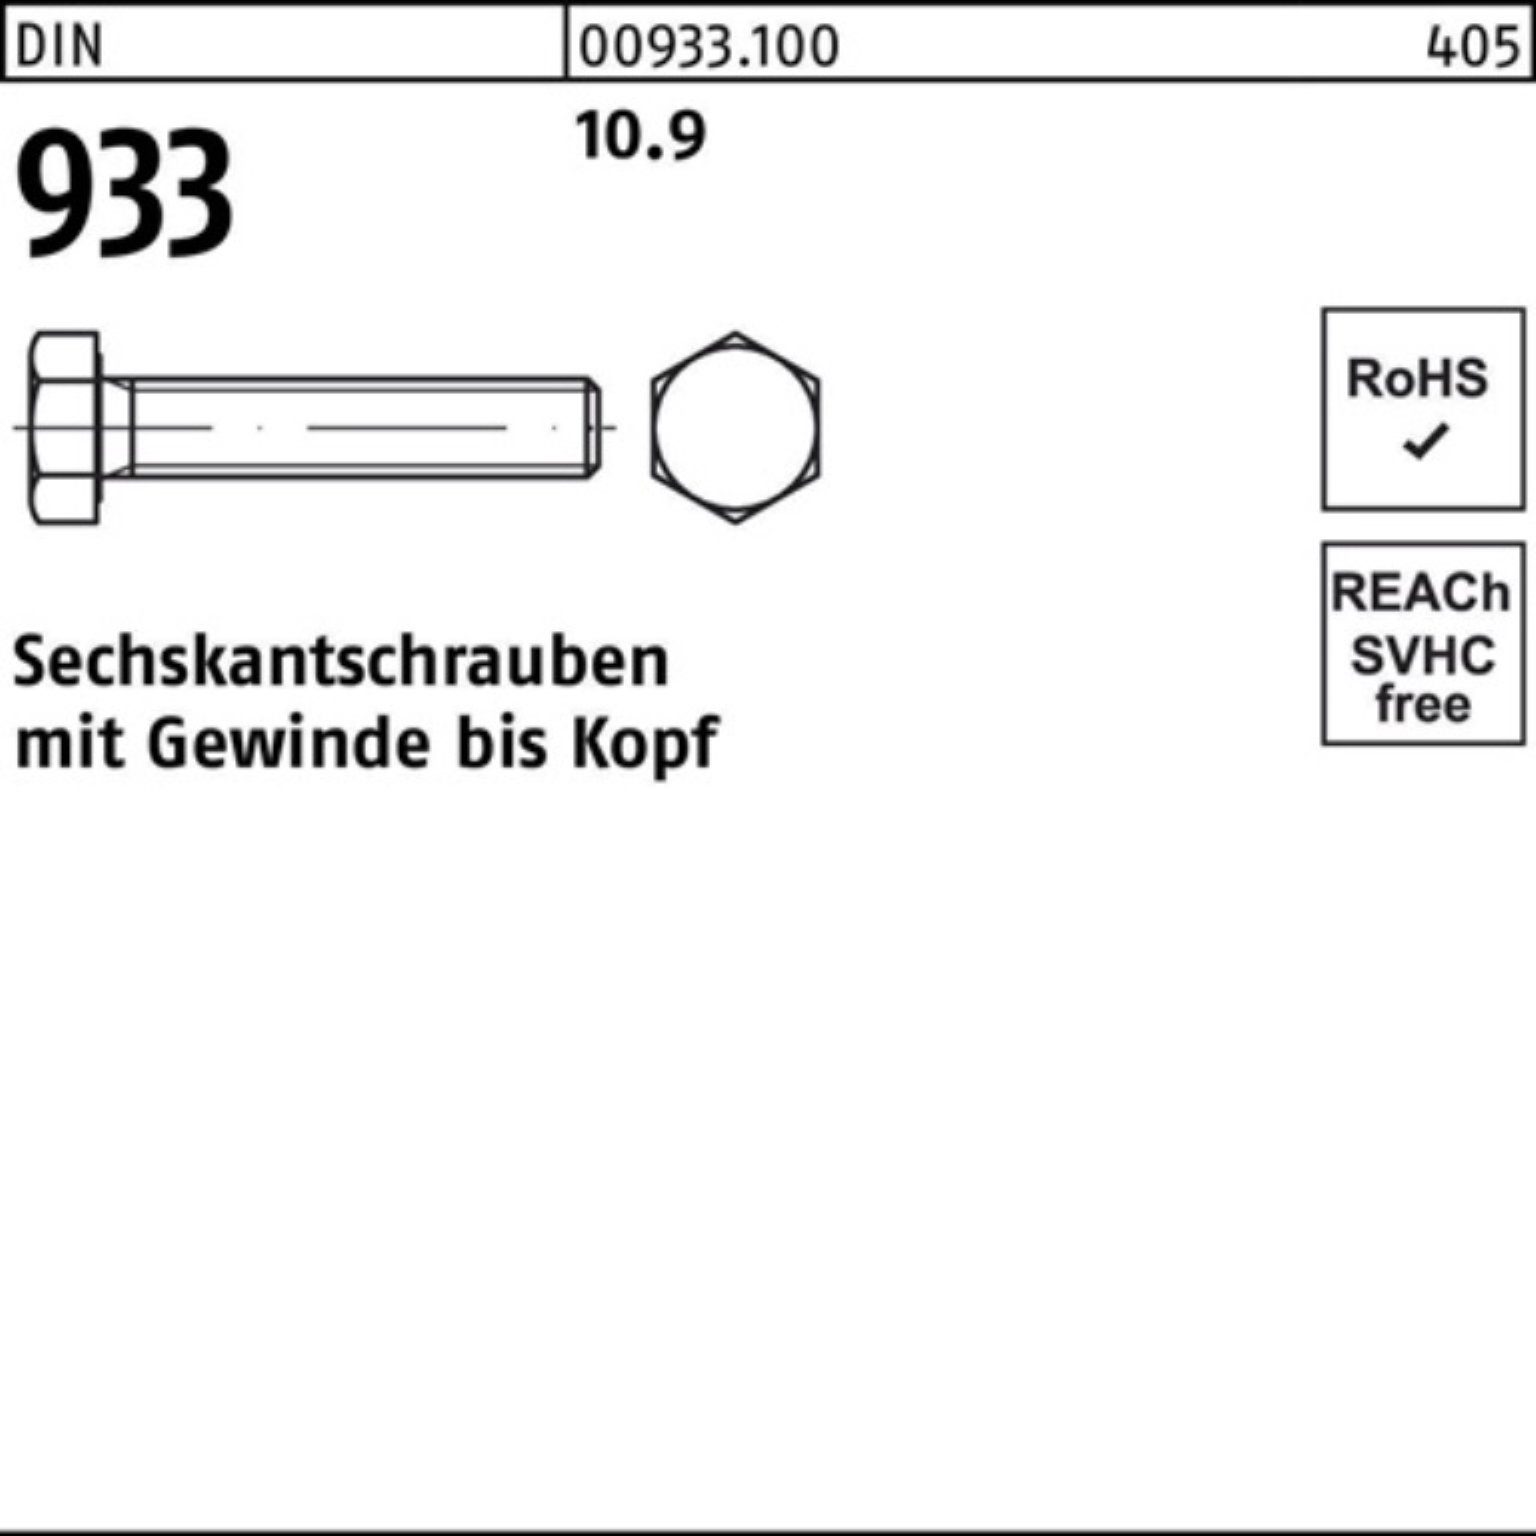 Pack 10.9 25 VG 93 Sechskantschraube Sechskantschraube M20x 120 Reyher Stück DIN DIN 100er 933